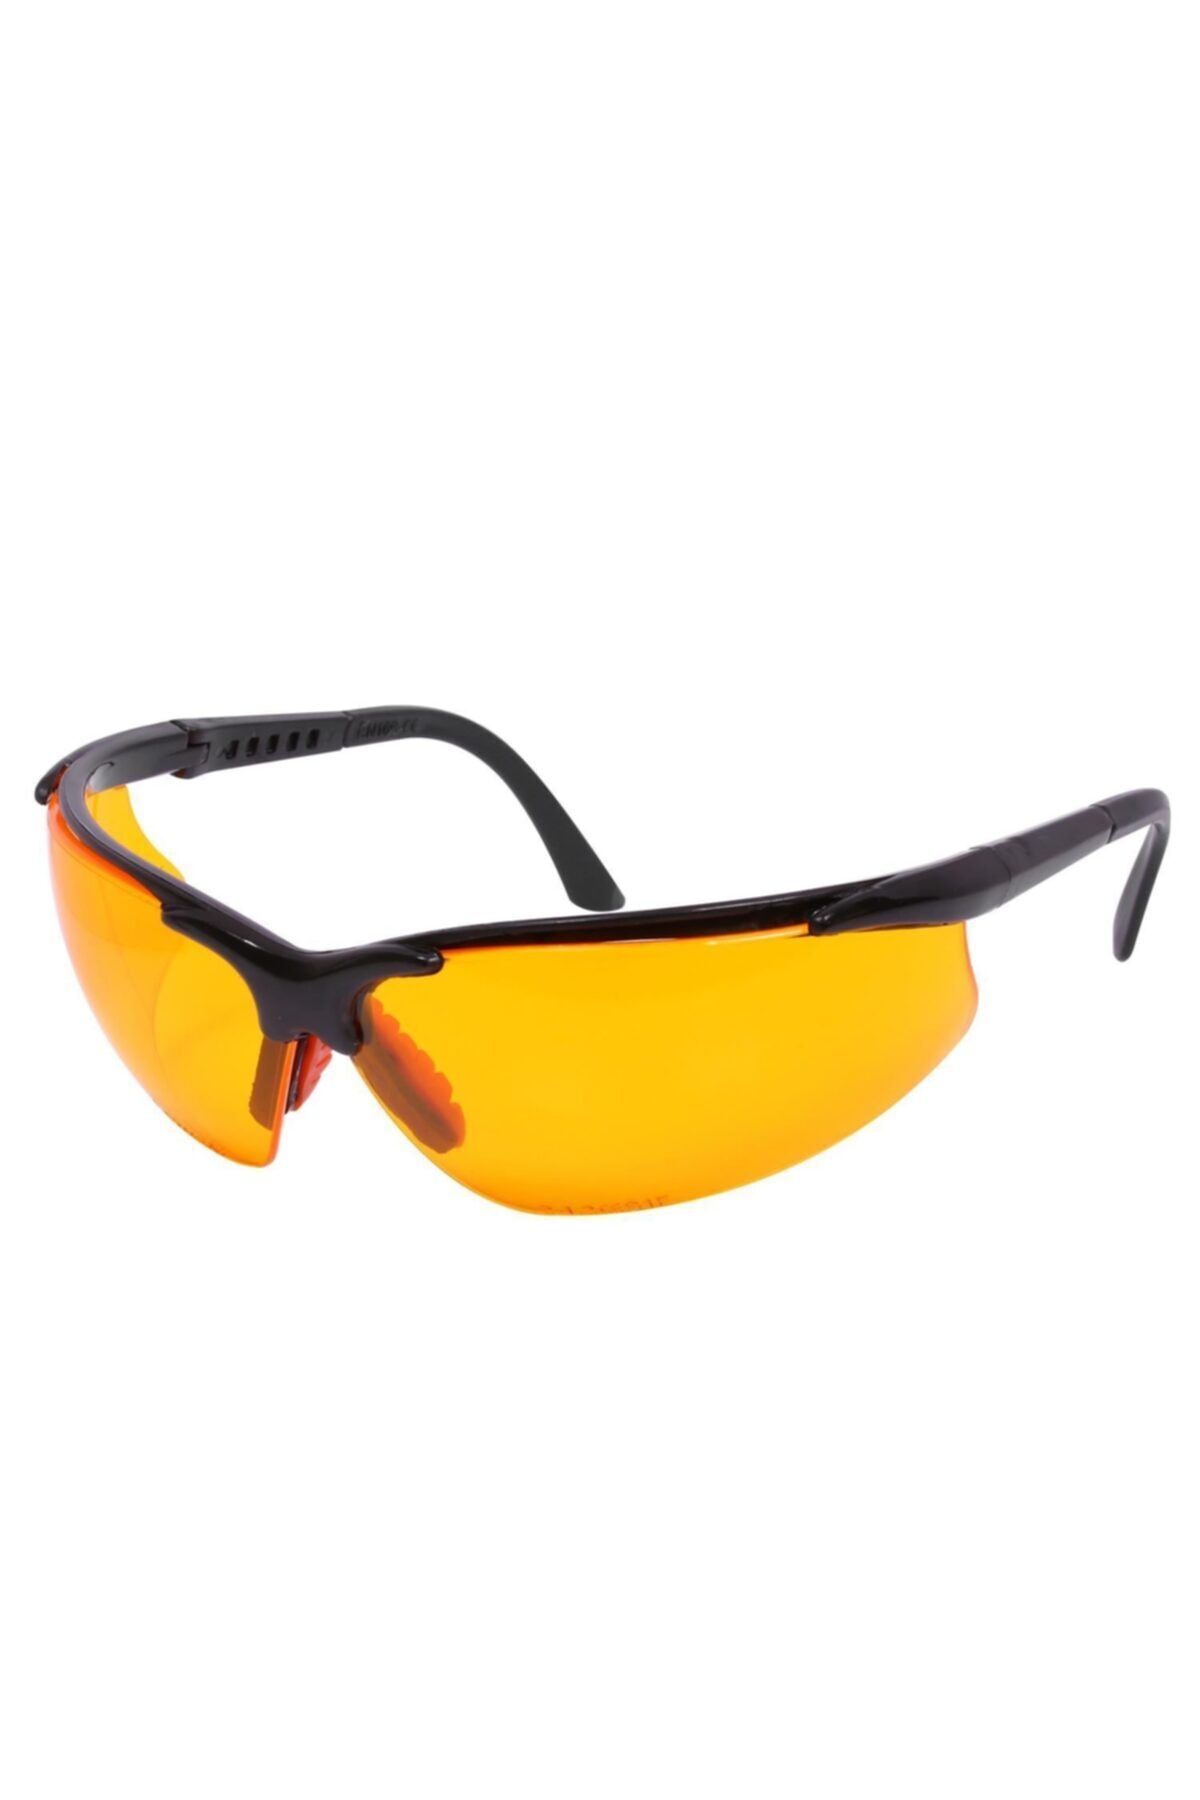 Genel Markalar Bisiklet Güneş Gözlüğü Koruyucu Bisikletçi Gözlük S600 Sarı